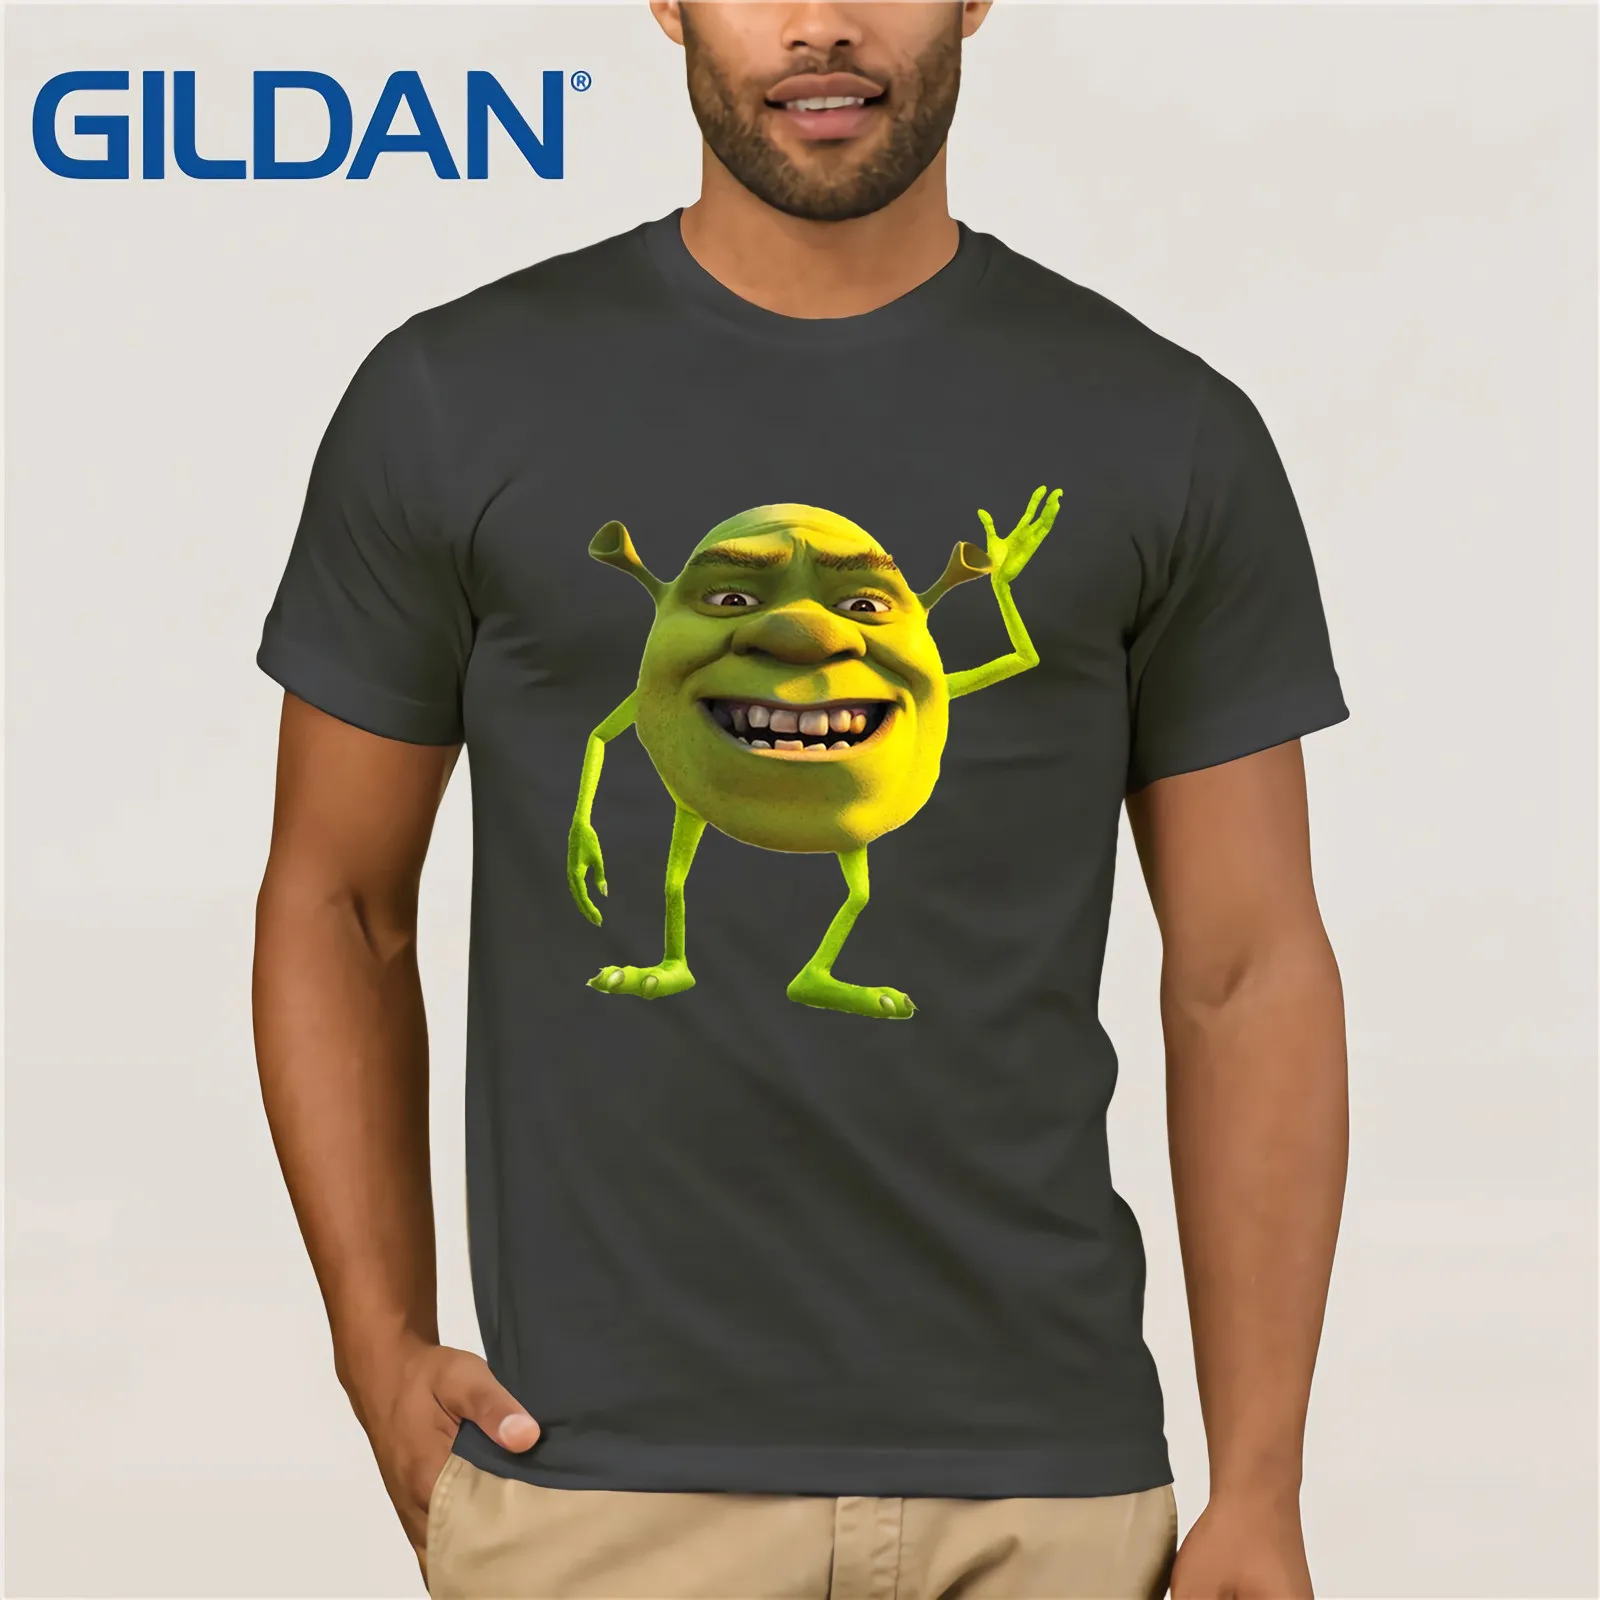 Shrek Wazowski футболка, винтажные Забавные футболки с вырезом лодочкой, хлопковые топы, футболка, повседневный топ с коротким рукавом, Забавные футболки, хлопковые топы, футболка - Цвет: charcoal gray